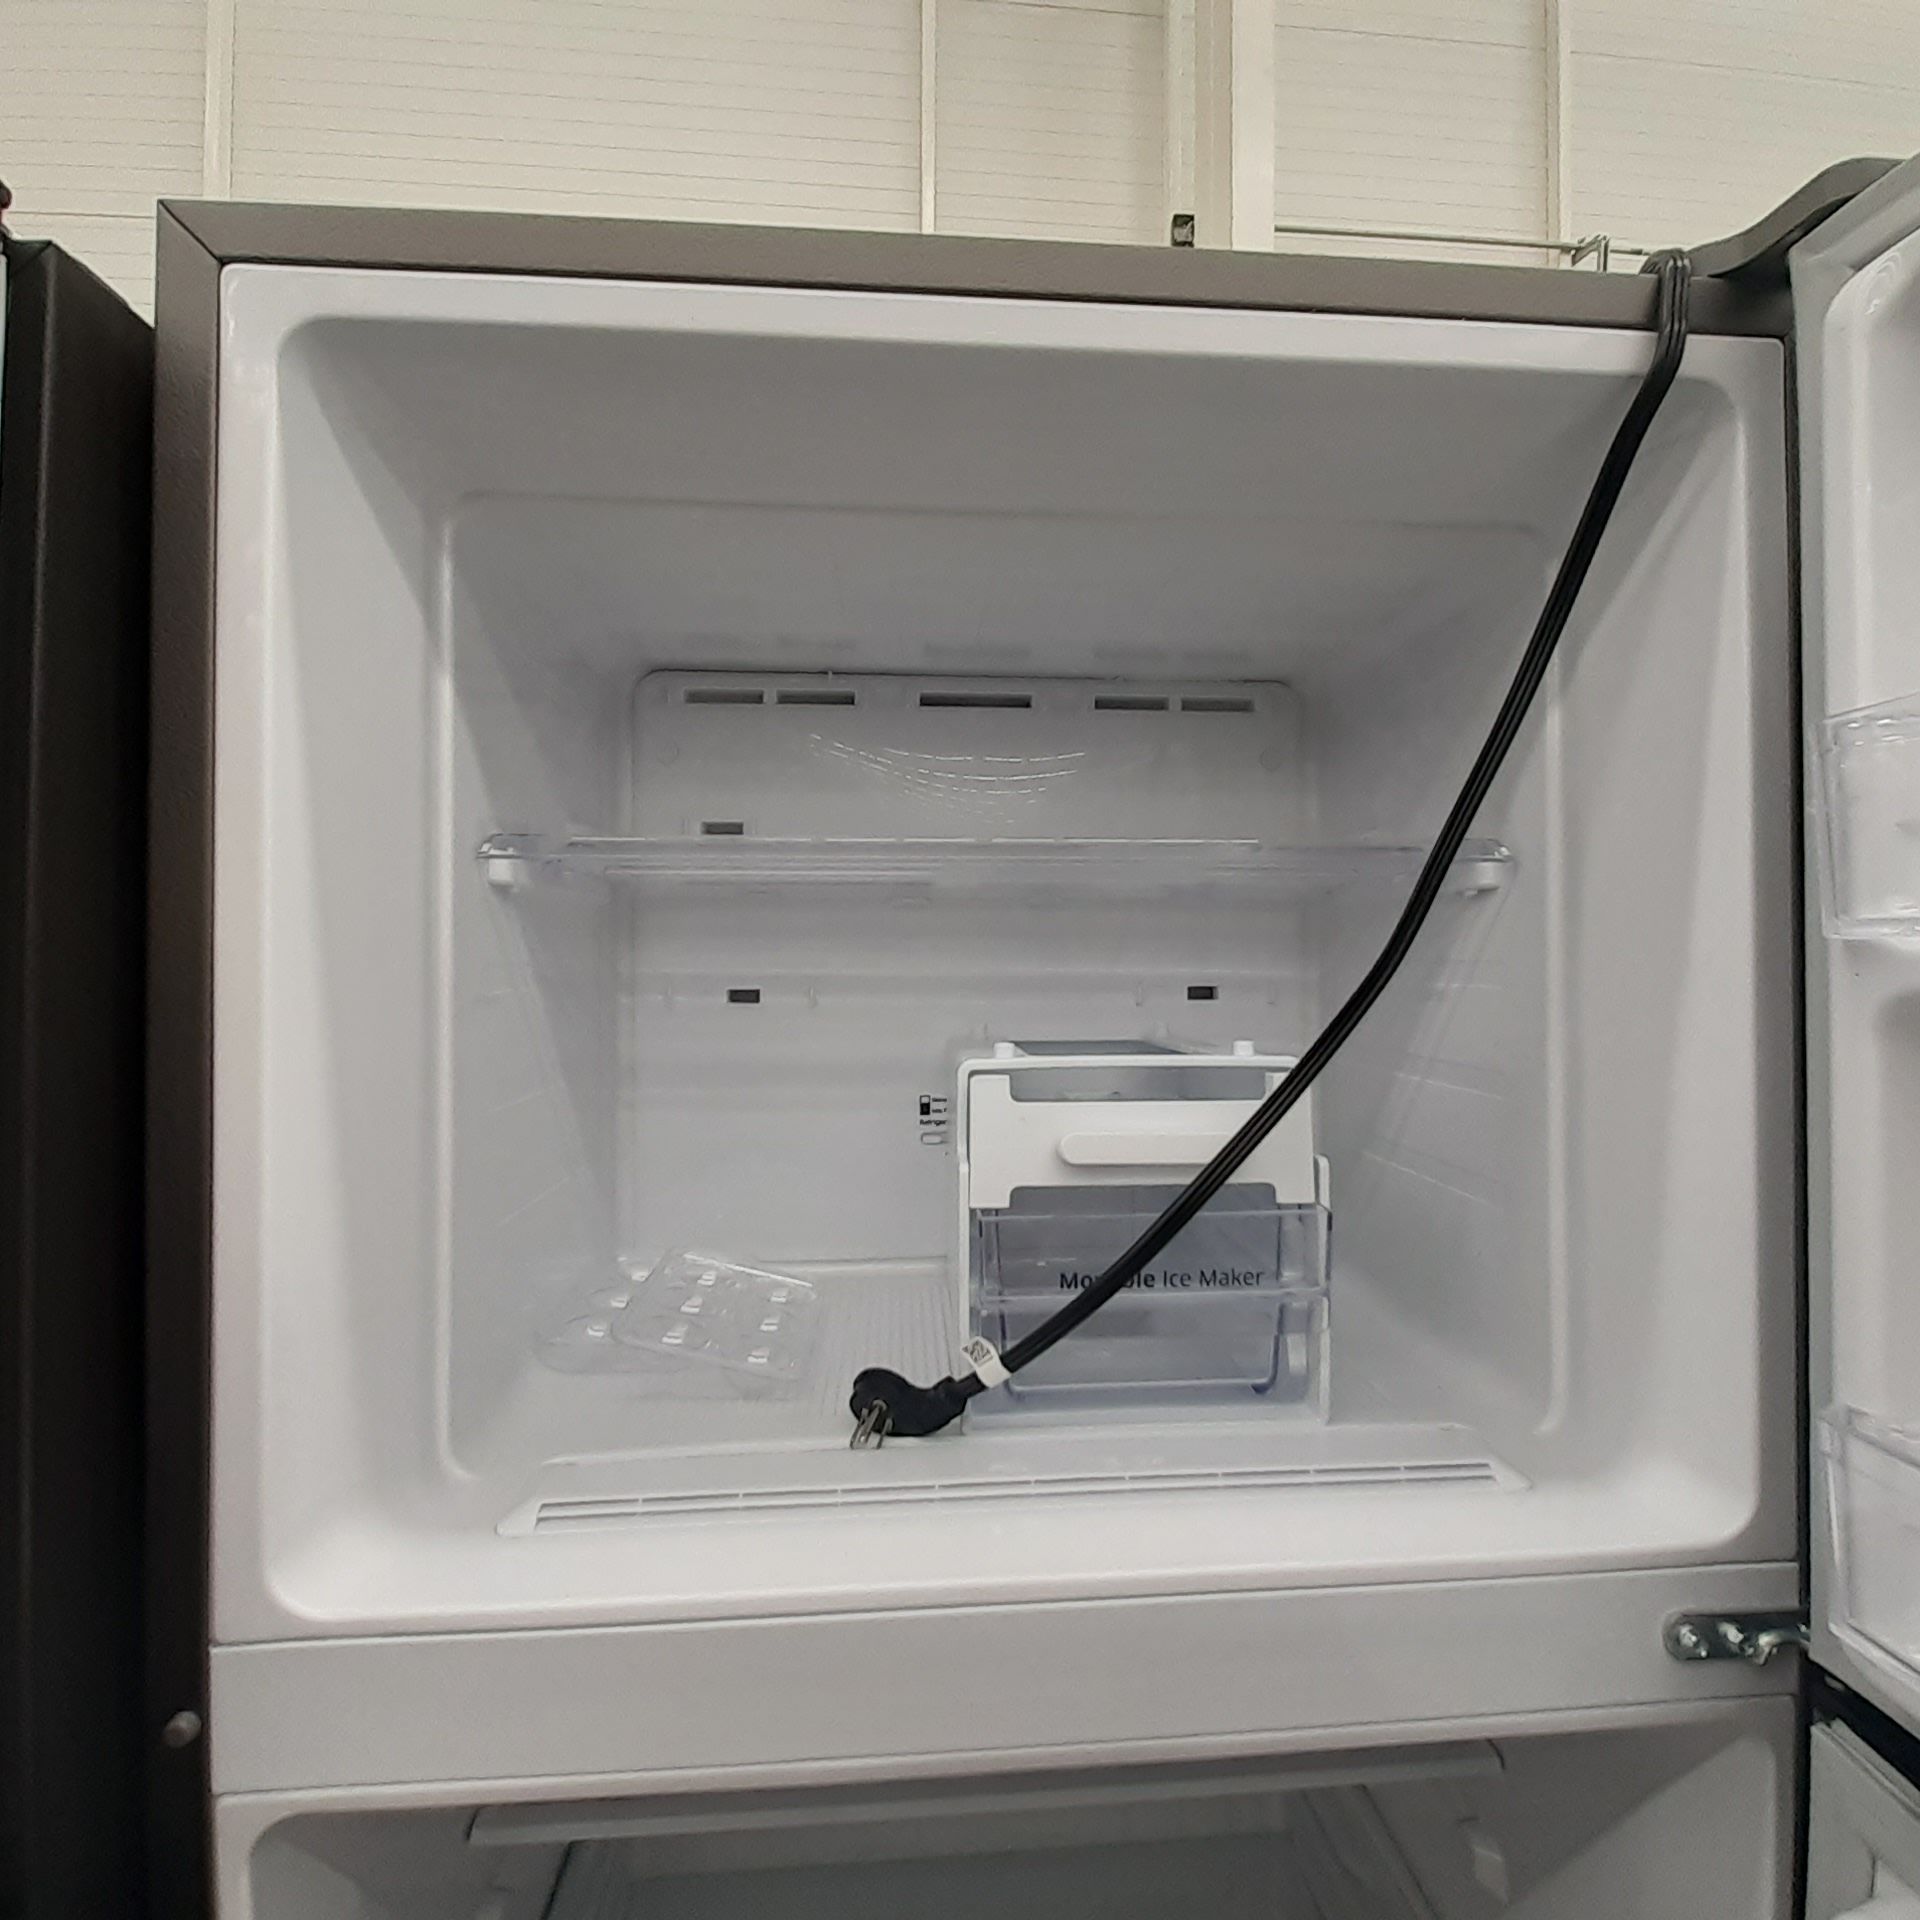 Lote De 2 Refrigeradores: 1 Refrigerador Marca Mabe, 1 Refrigerador Marca Winia, Distintos Modelos - Image 9 of 23